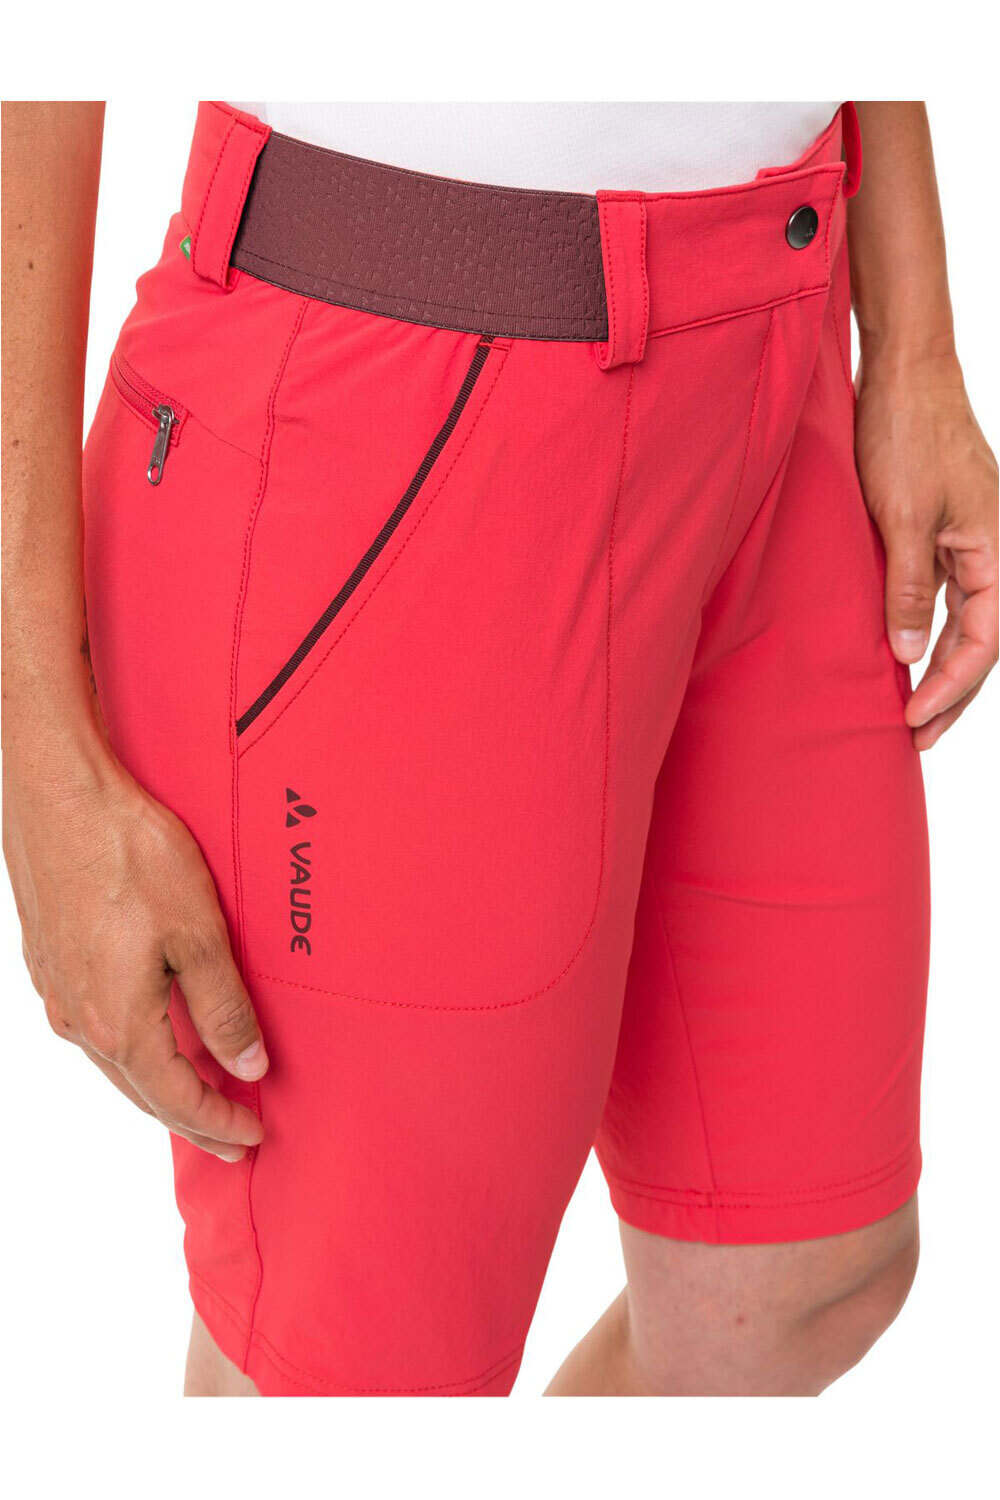 Vaude pantalón corto montaña mujer Women's Farley Stretch Shorts II vista detalle